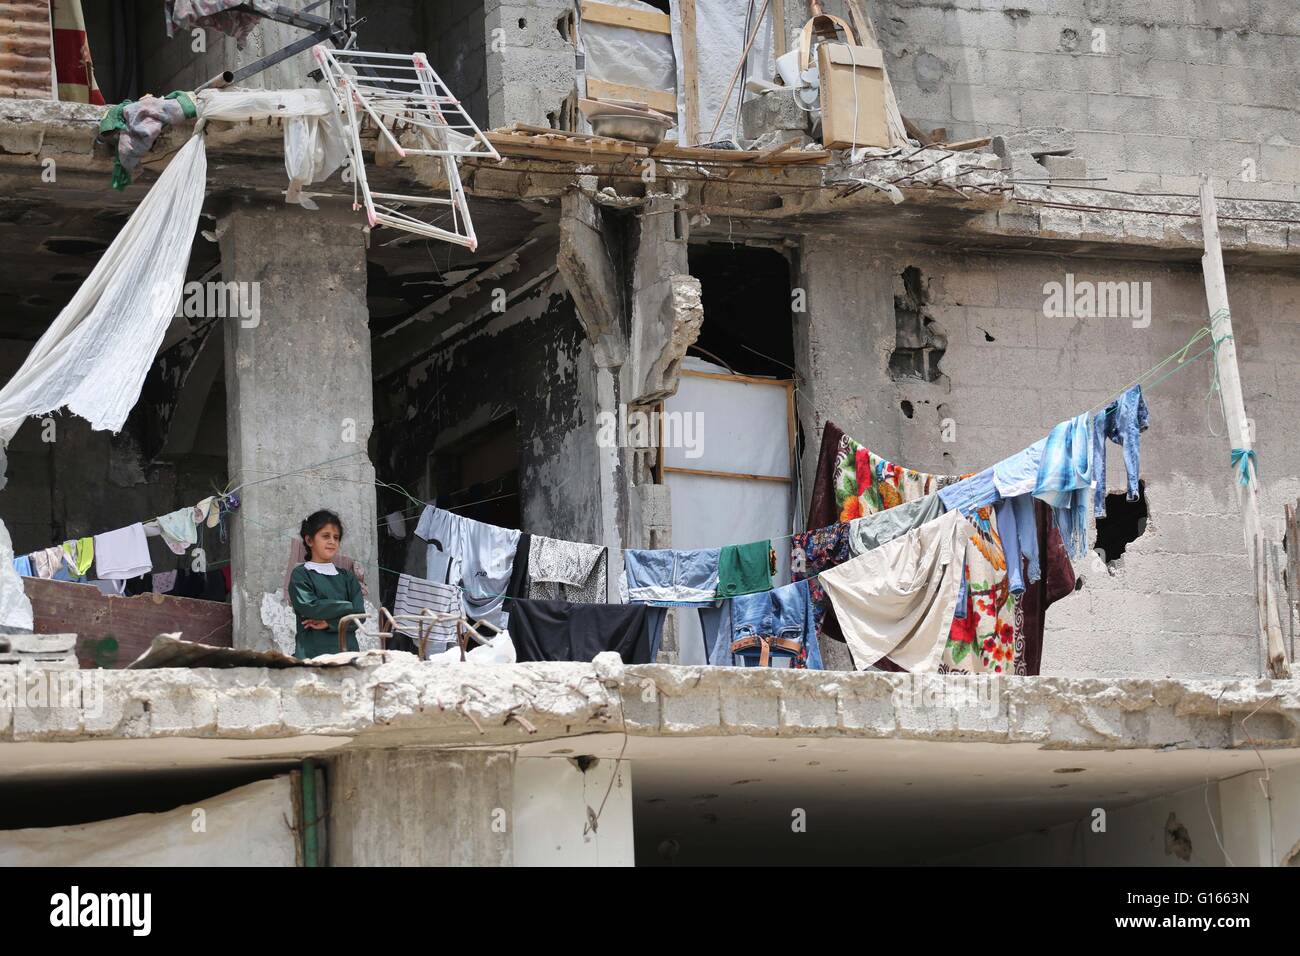 La ville de Gaza, bande de Gaza, territoire palestinien. 10 mai, 2016. Une fille palestinienne se trouve sur une maison détruite alors que le Ministre belge des Affaires étrangères Didier Reynders fait un discours dans le quartier de l'est de la ville de Gaza Shujaiya, qui a été détruit pendant la guerre de 50 jours entre Israël et le Hamas militants dans l'été de 2014, lors d'une visite officielle dans la bande de Gaza le 10 mai 2016 Crédit : Mohammed Asad APA/Images/ZUMA/Alamy Fil Live News Banque D'Images